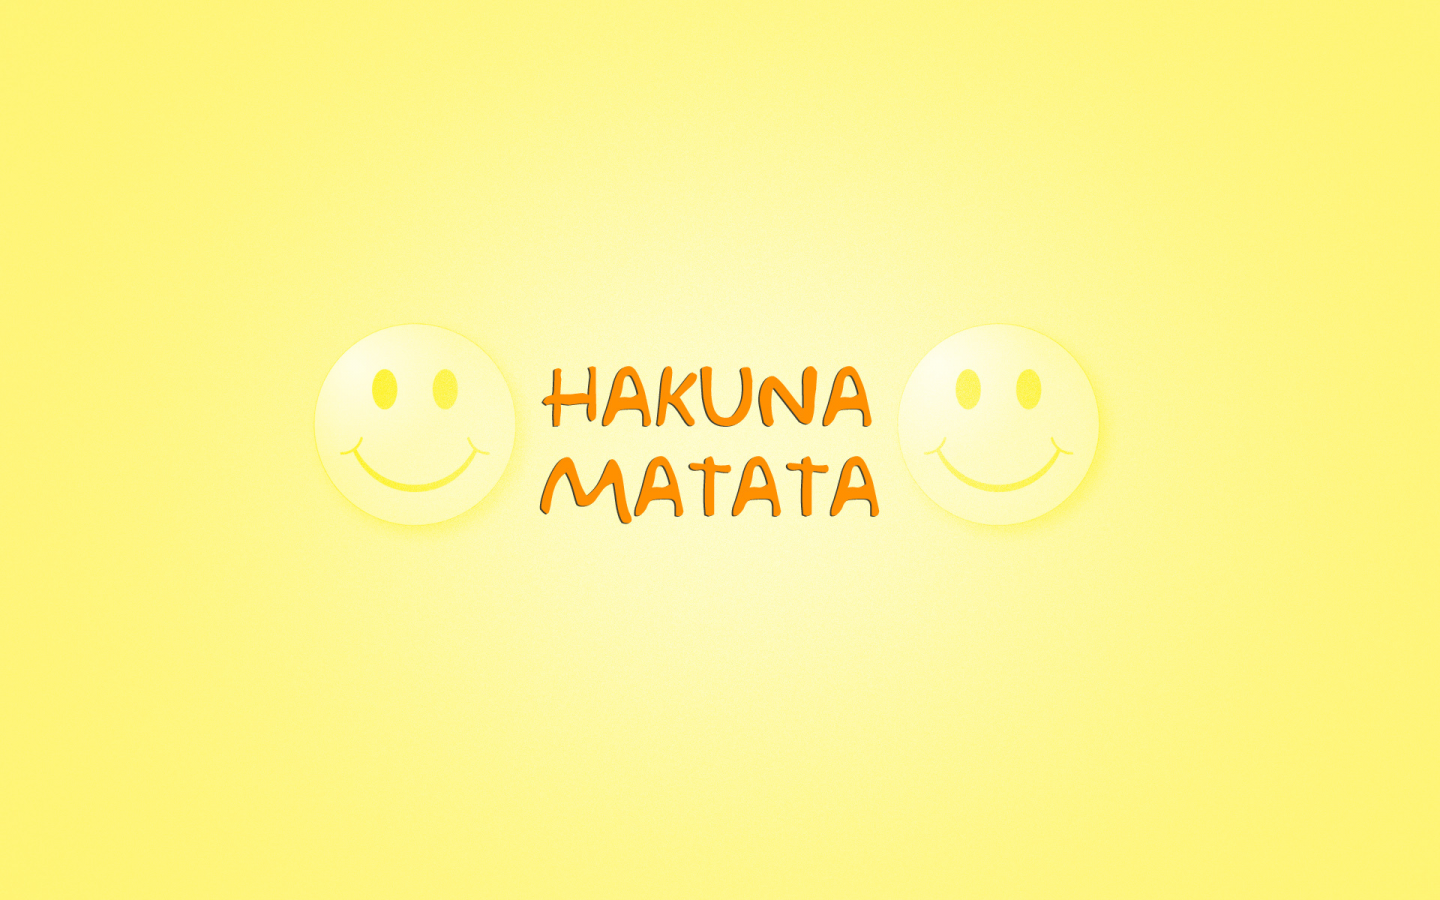 акуна матата, фраза из мультфильма, Слова, hakuna matata